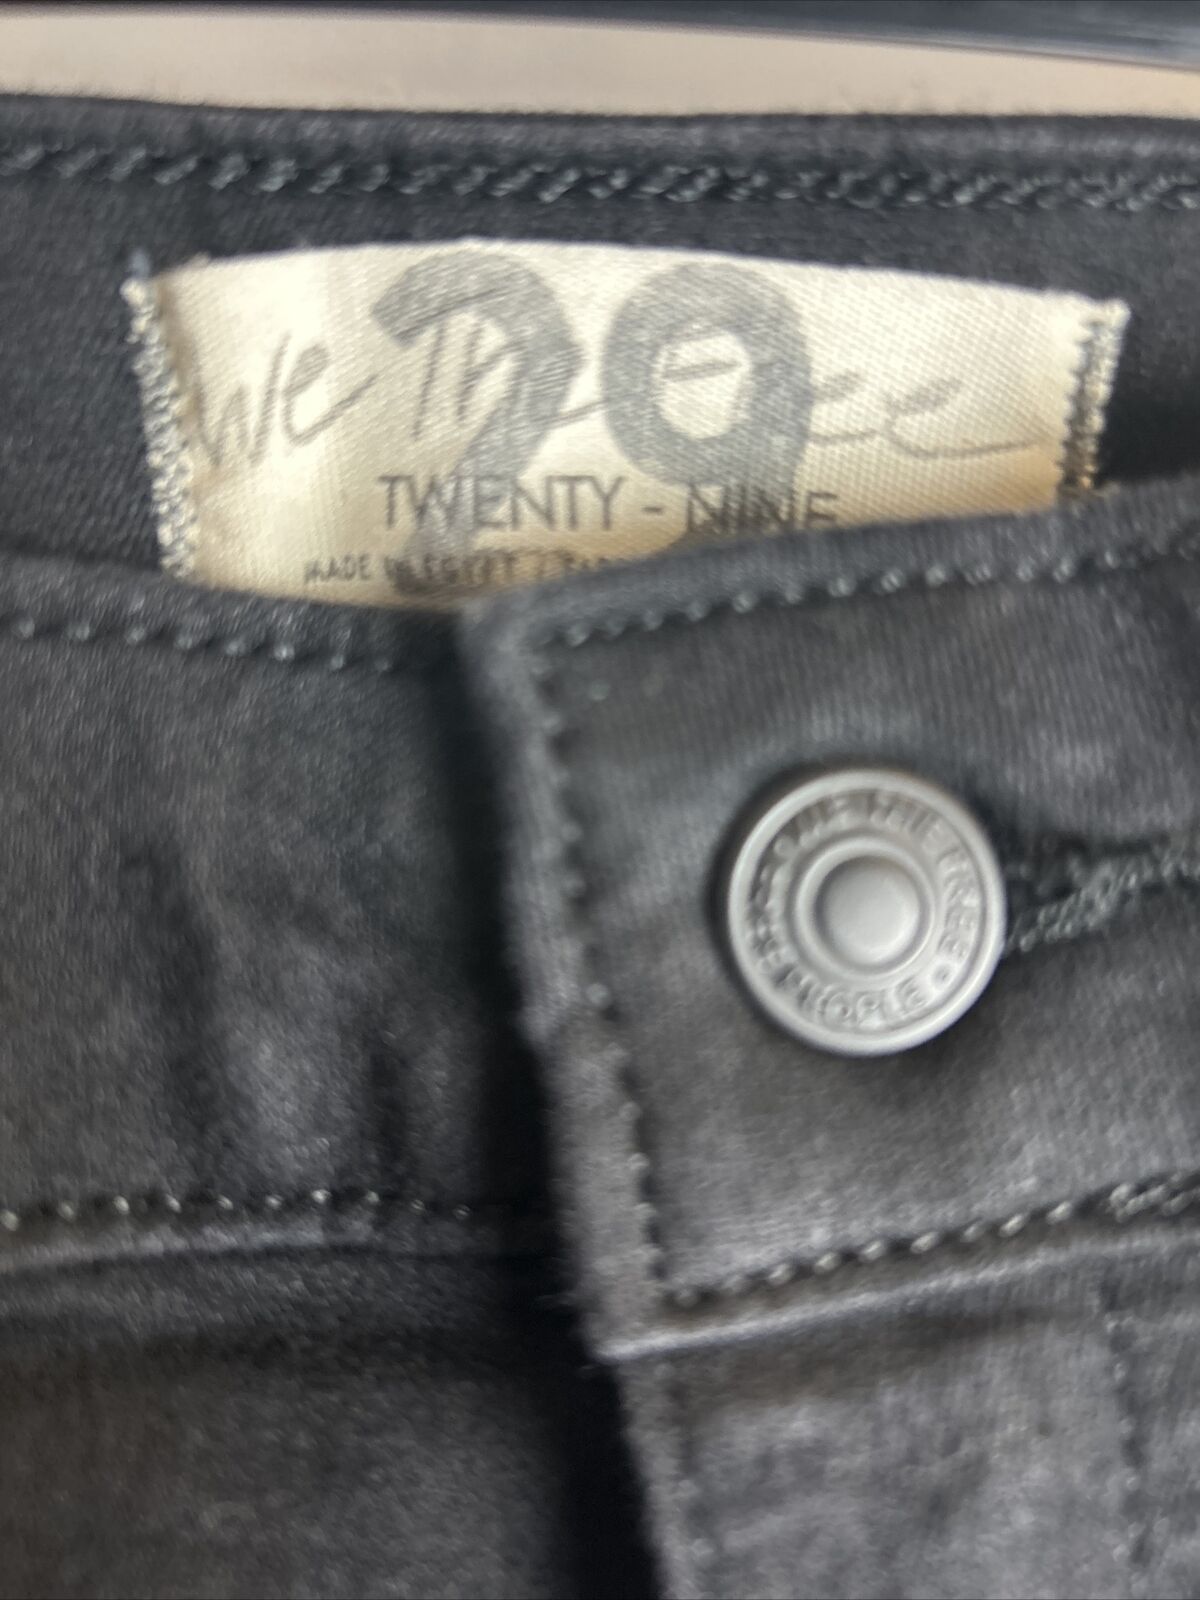 Free People Womens Real Deal Slit Jeans - Black. UK 29 **** Ref V145